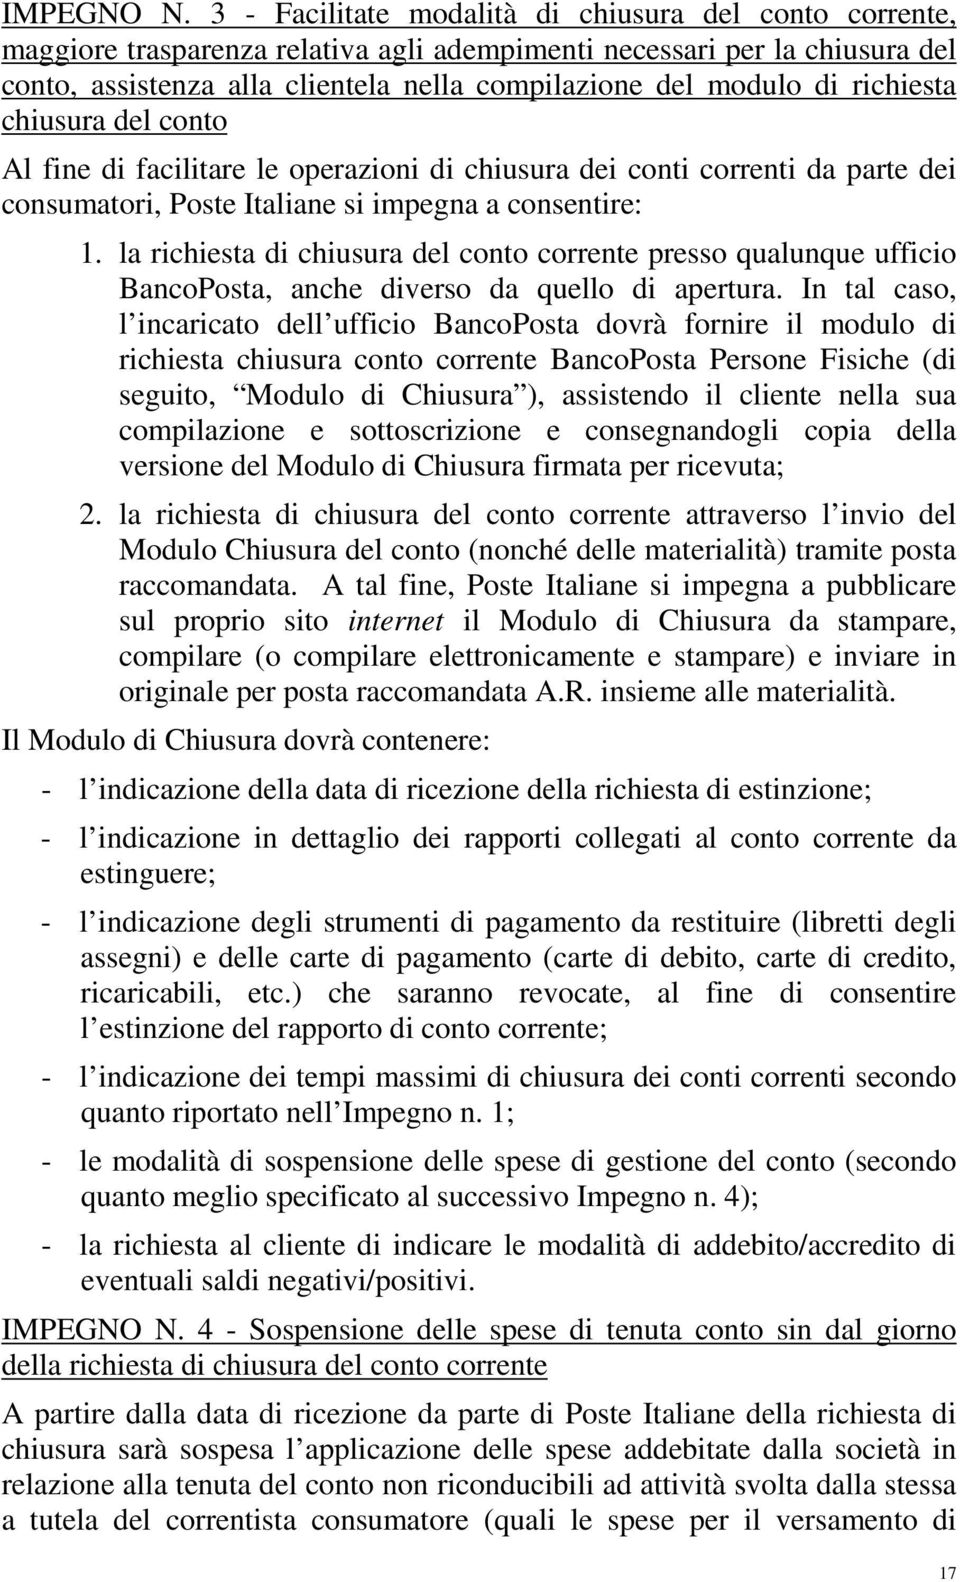 richiesta chiusura del conto Al fine di facilitare le operazioni di chiusura dei conti correnti da parte dei consumatori, Poste Italiane si impegna a consentire: 1.